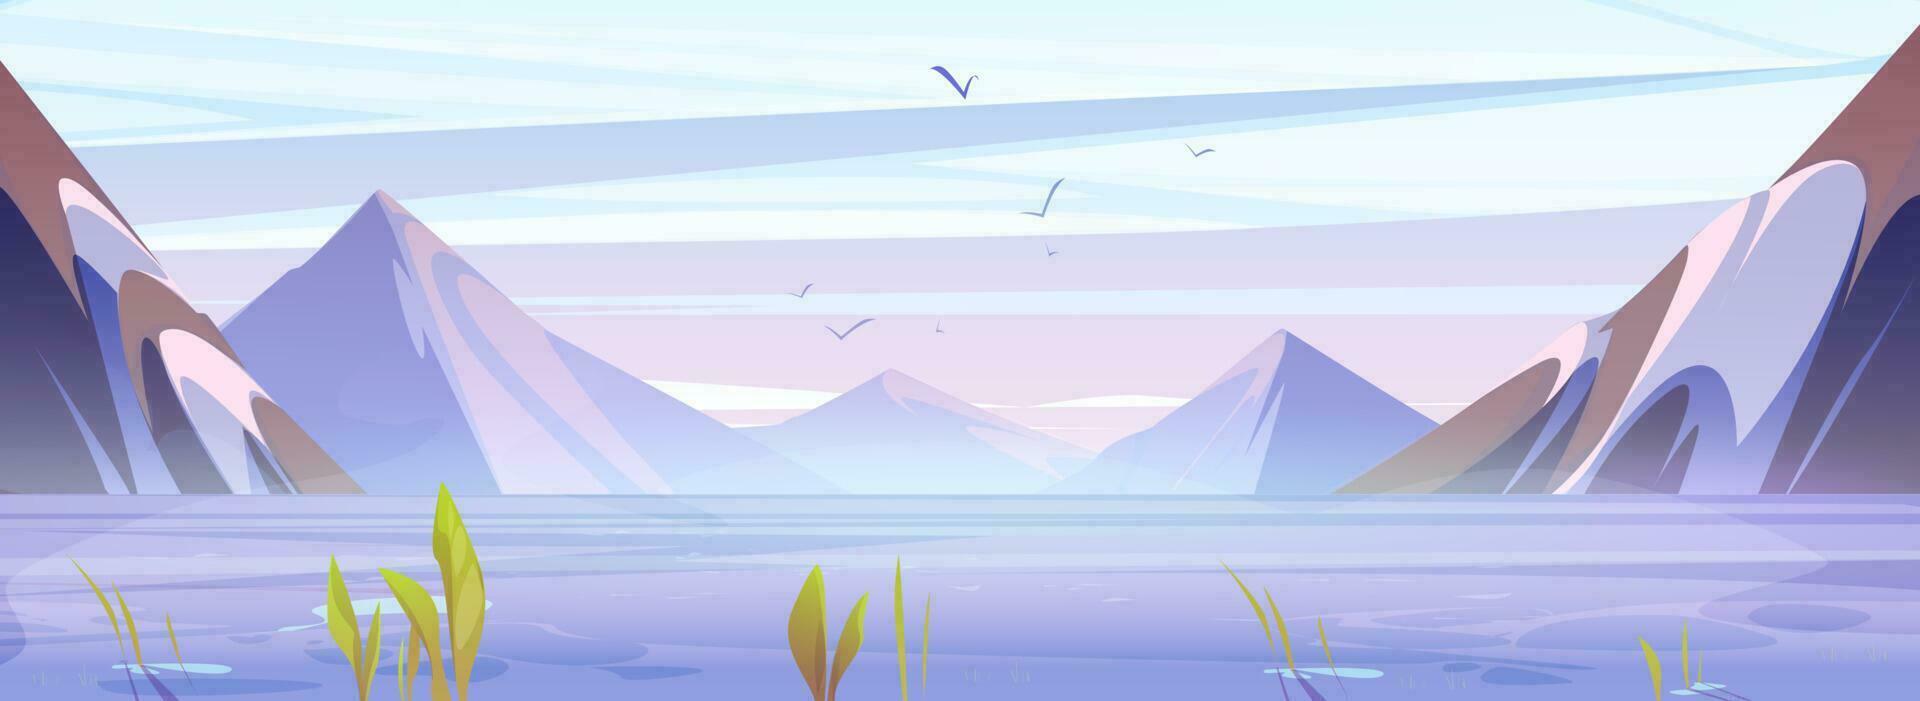 sommar morgon- berg landskap med sjö vektor